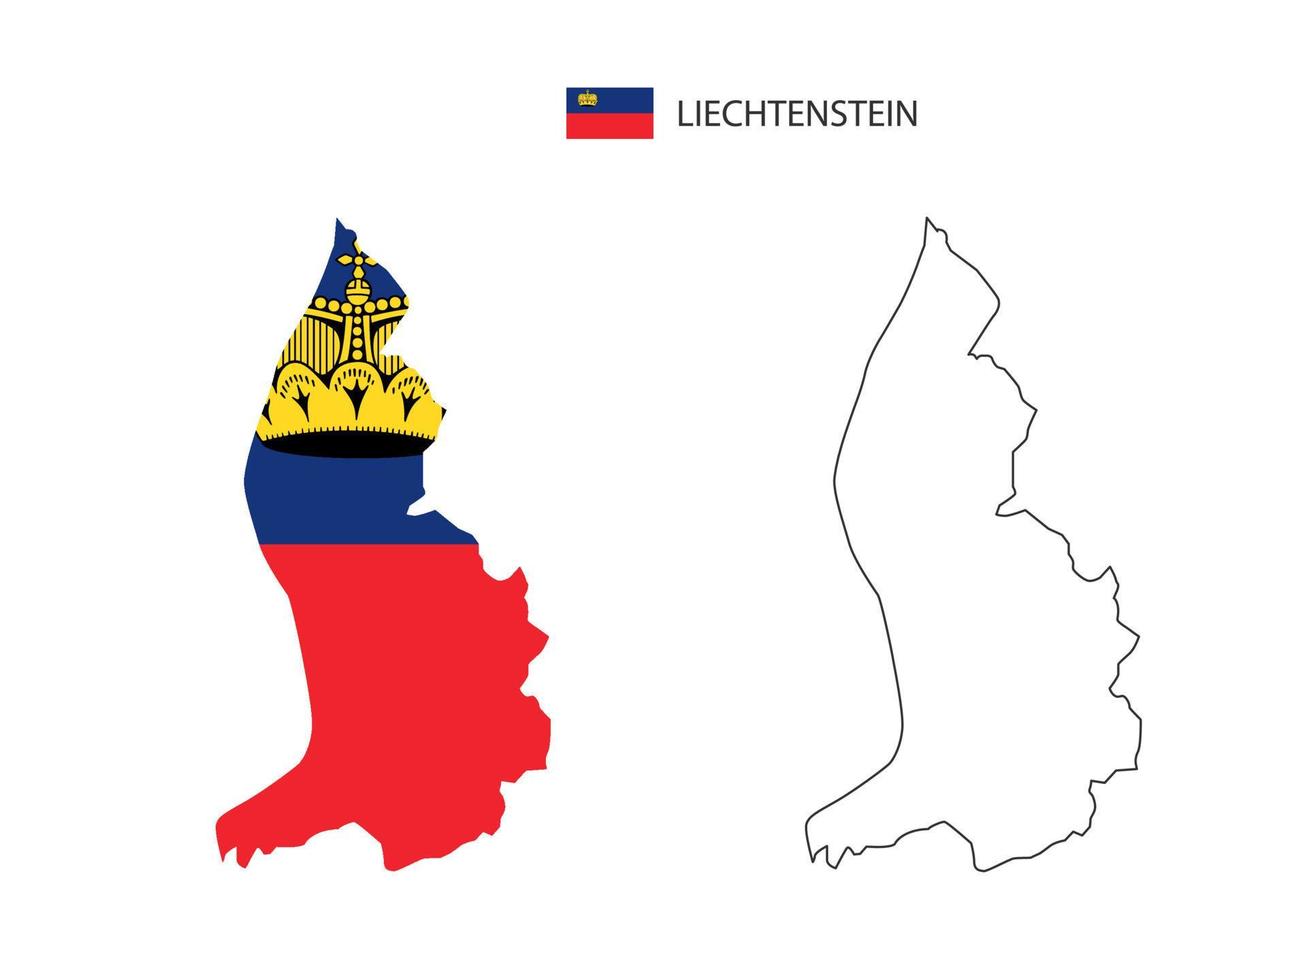 liechtenstein carte ville vecteur divisé par style de simplicité de contour. ont 2 versions, la version en ligne fine noire et la couleur de la version du drapeau du pays. les deux cartes étaient sur fond blanc.